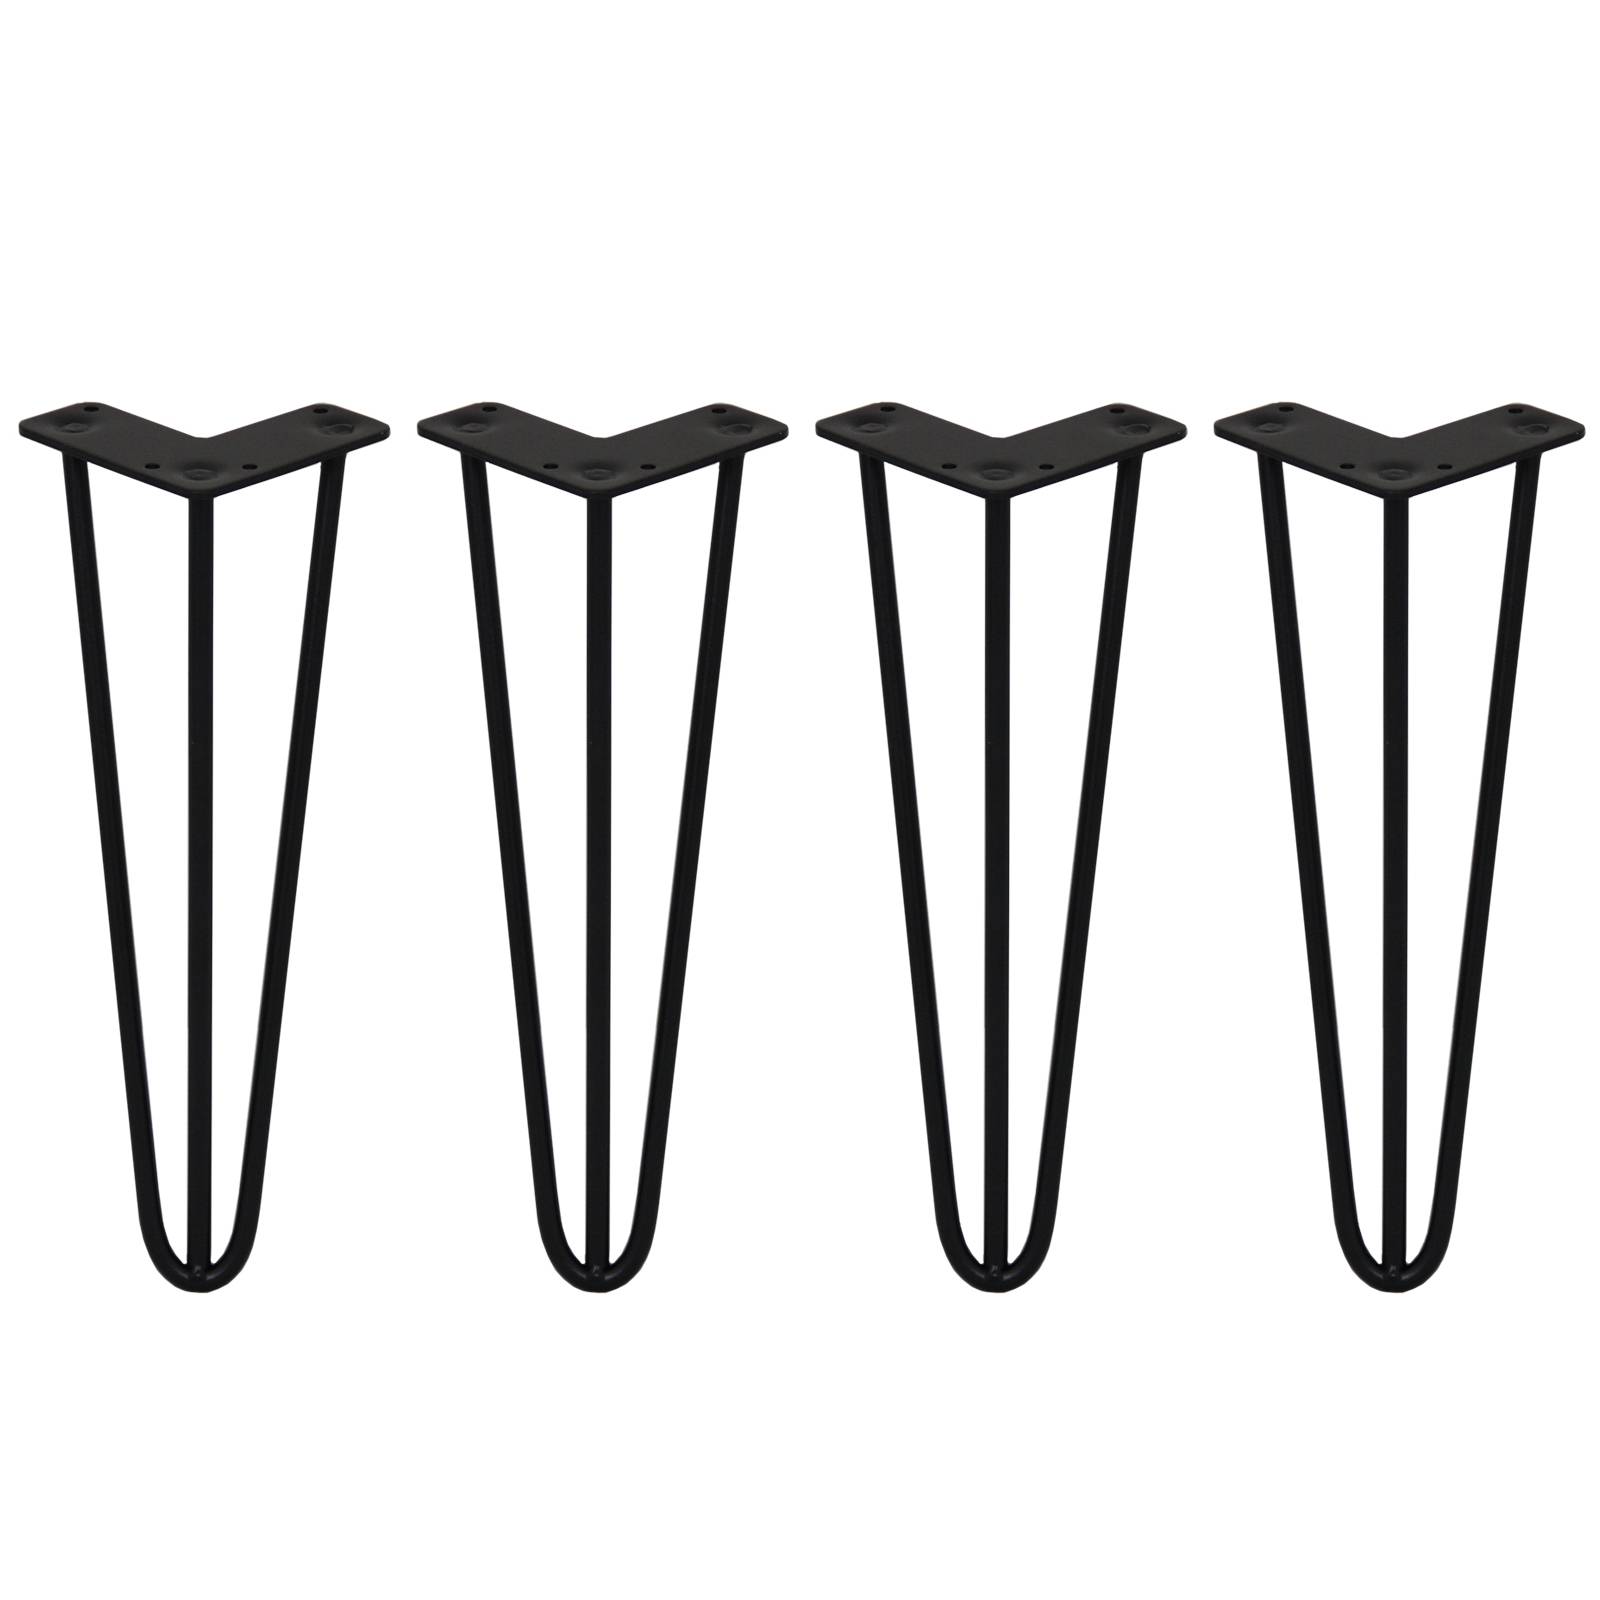 Drenky Patas para Muebles 20 cm, 4 Piezas Patas para Mesas Hierro Hairpin  Legs Negro Patas